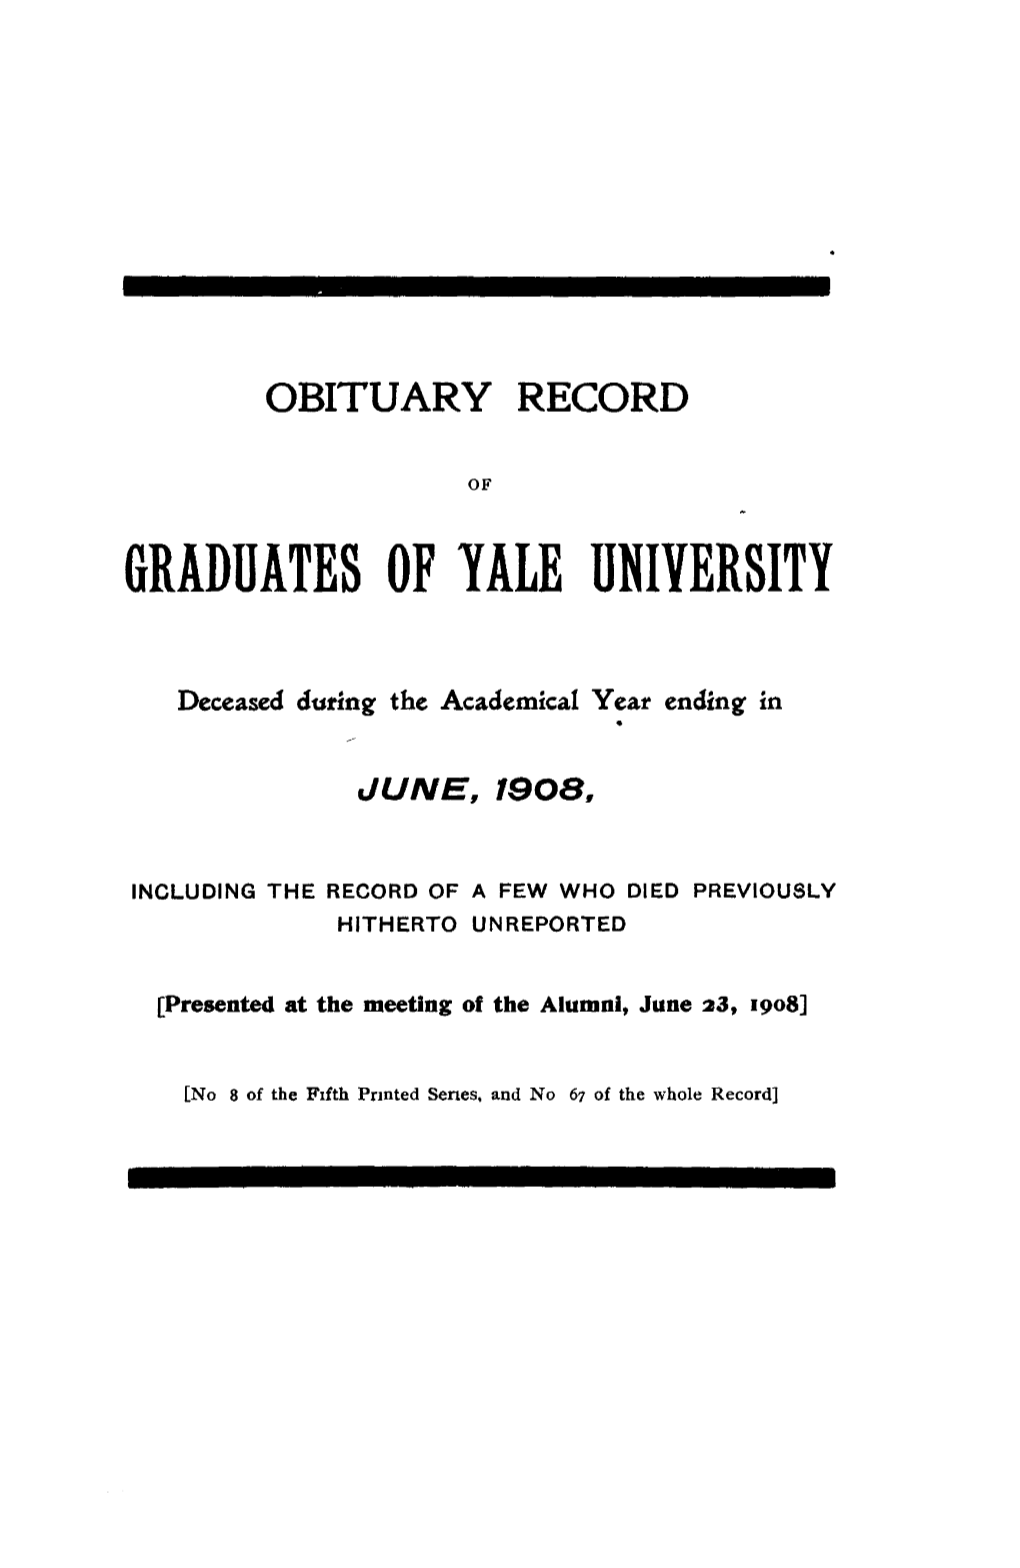 1907-1908 Obituary Record of Graduates of Yale University